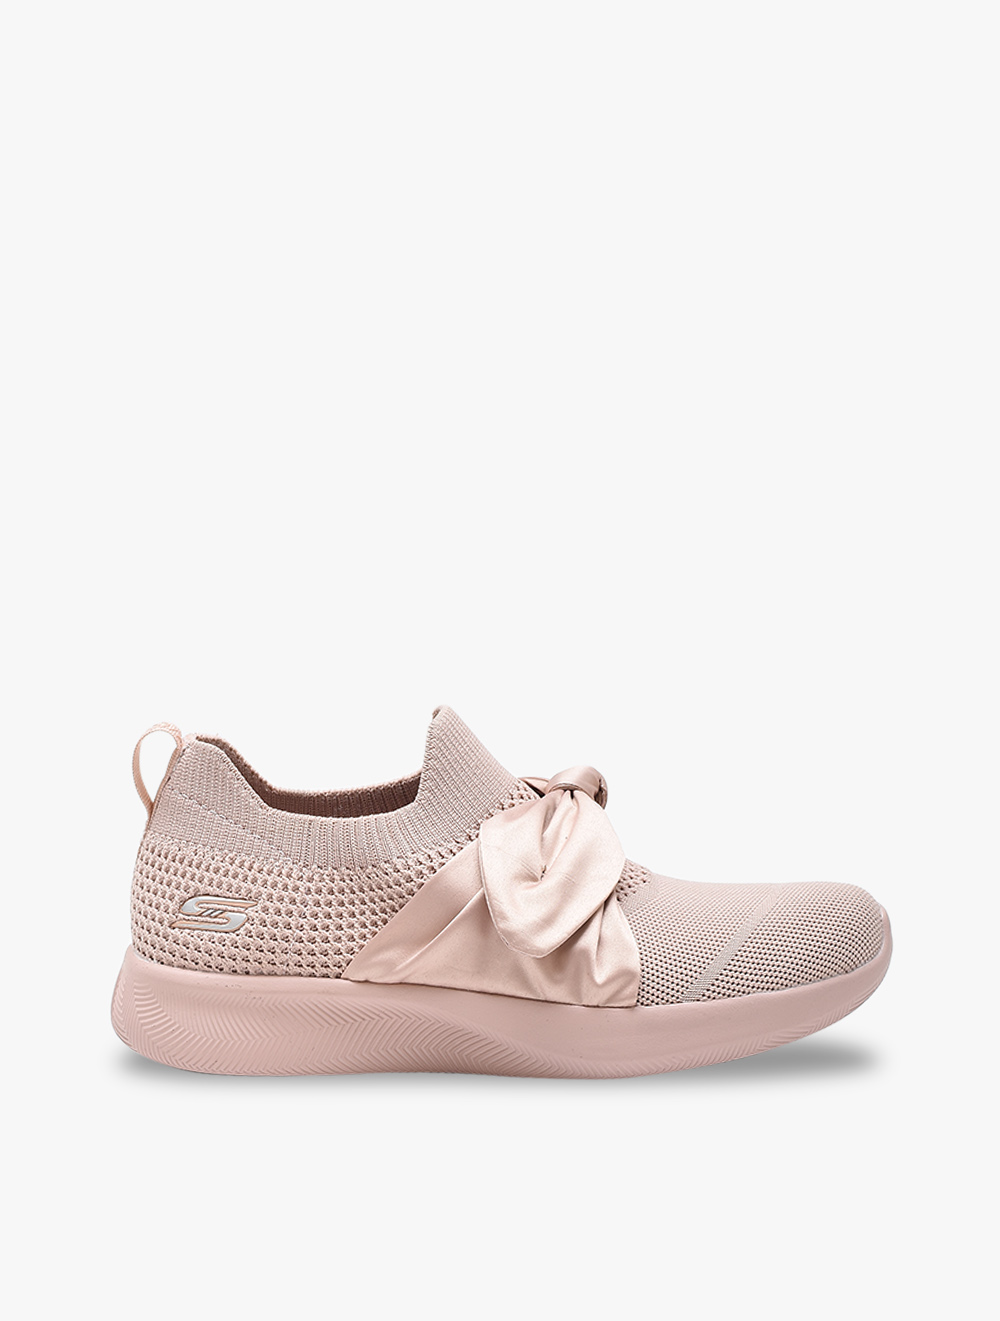 جدا منصة توقع skechers pink bow shoes 